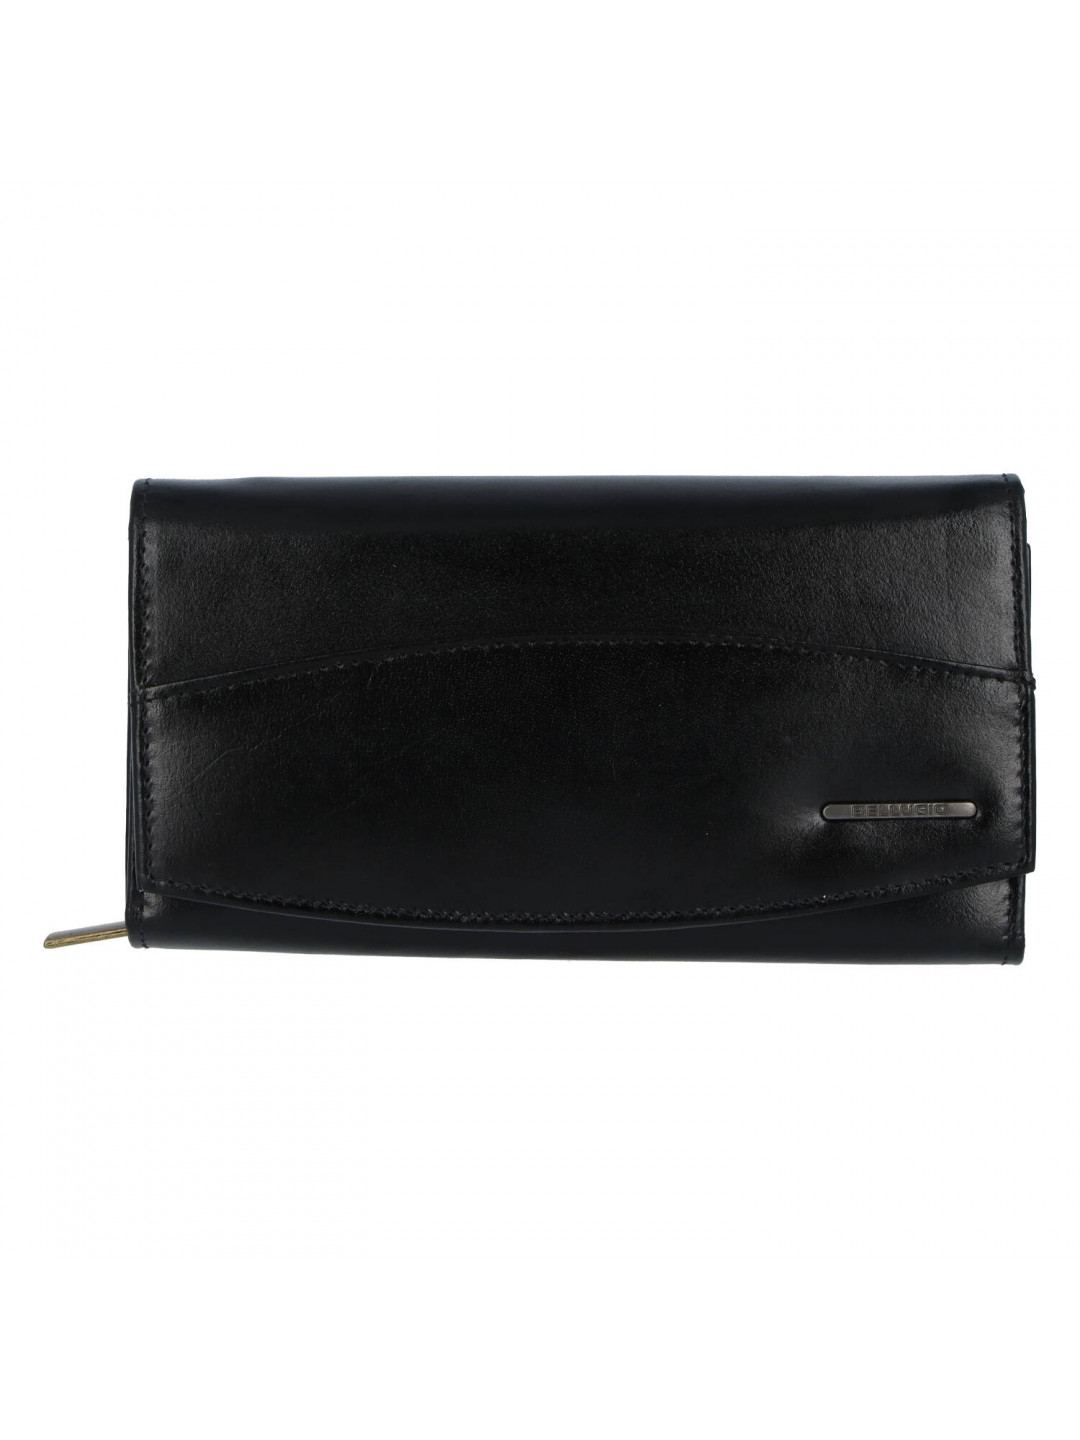 Praktická dámská kožená peněženka Siva černá